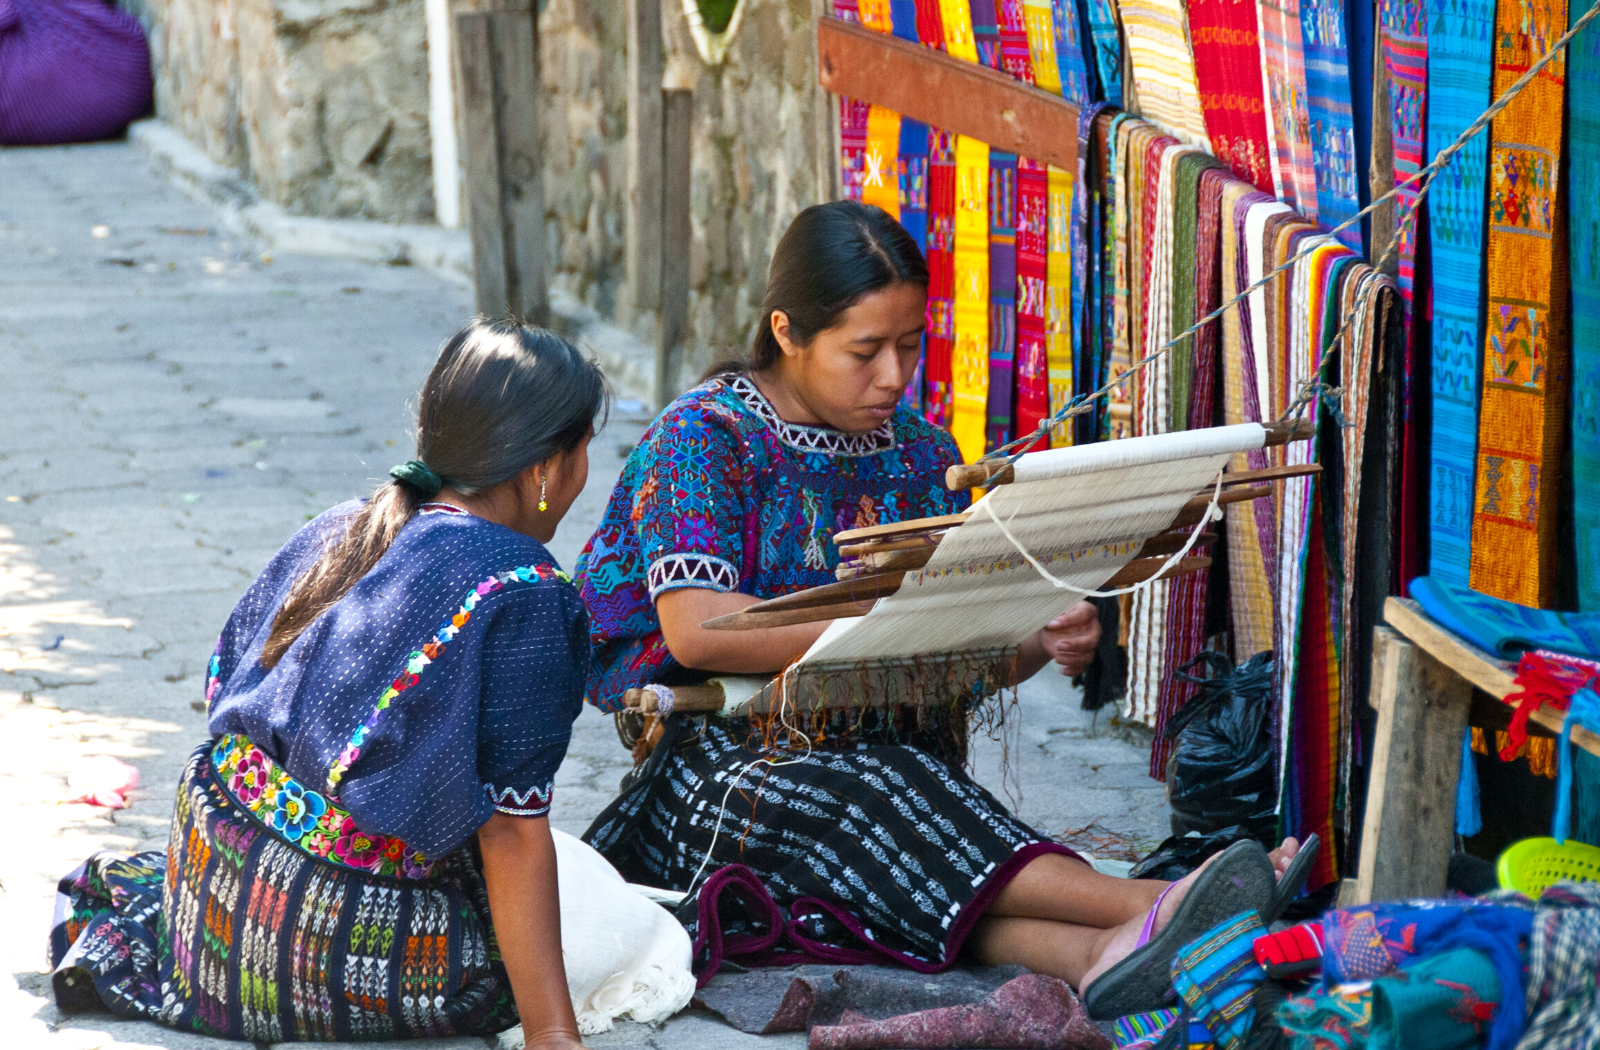 Weavers of Guatemala